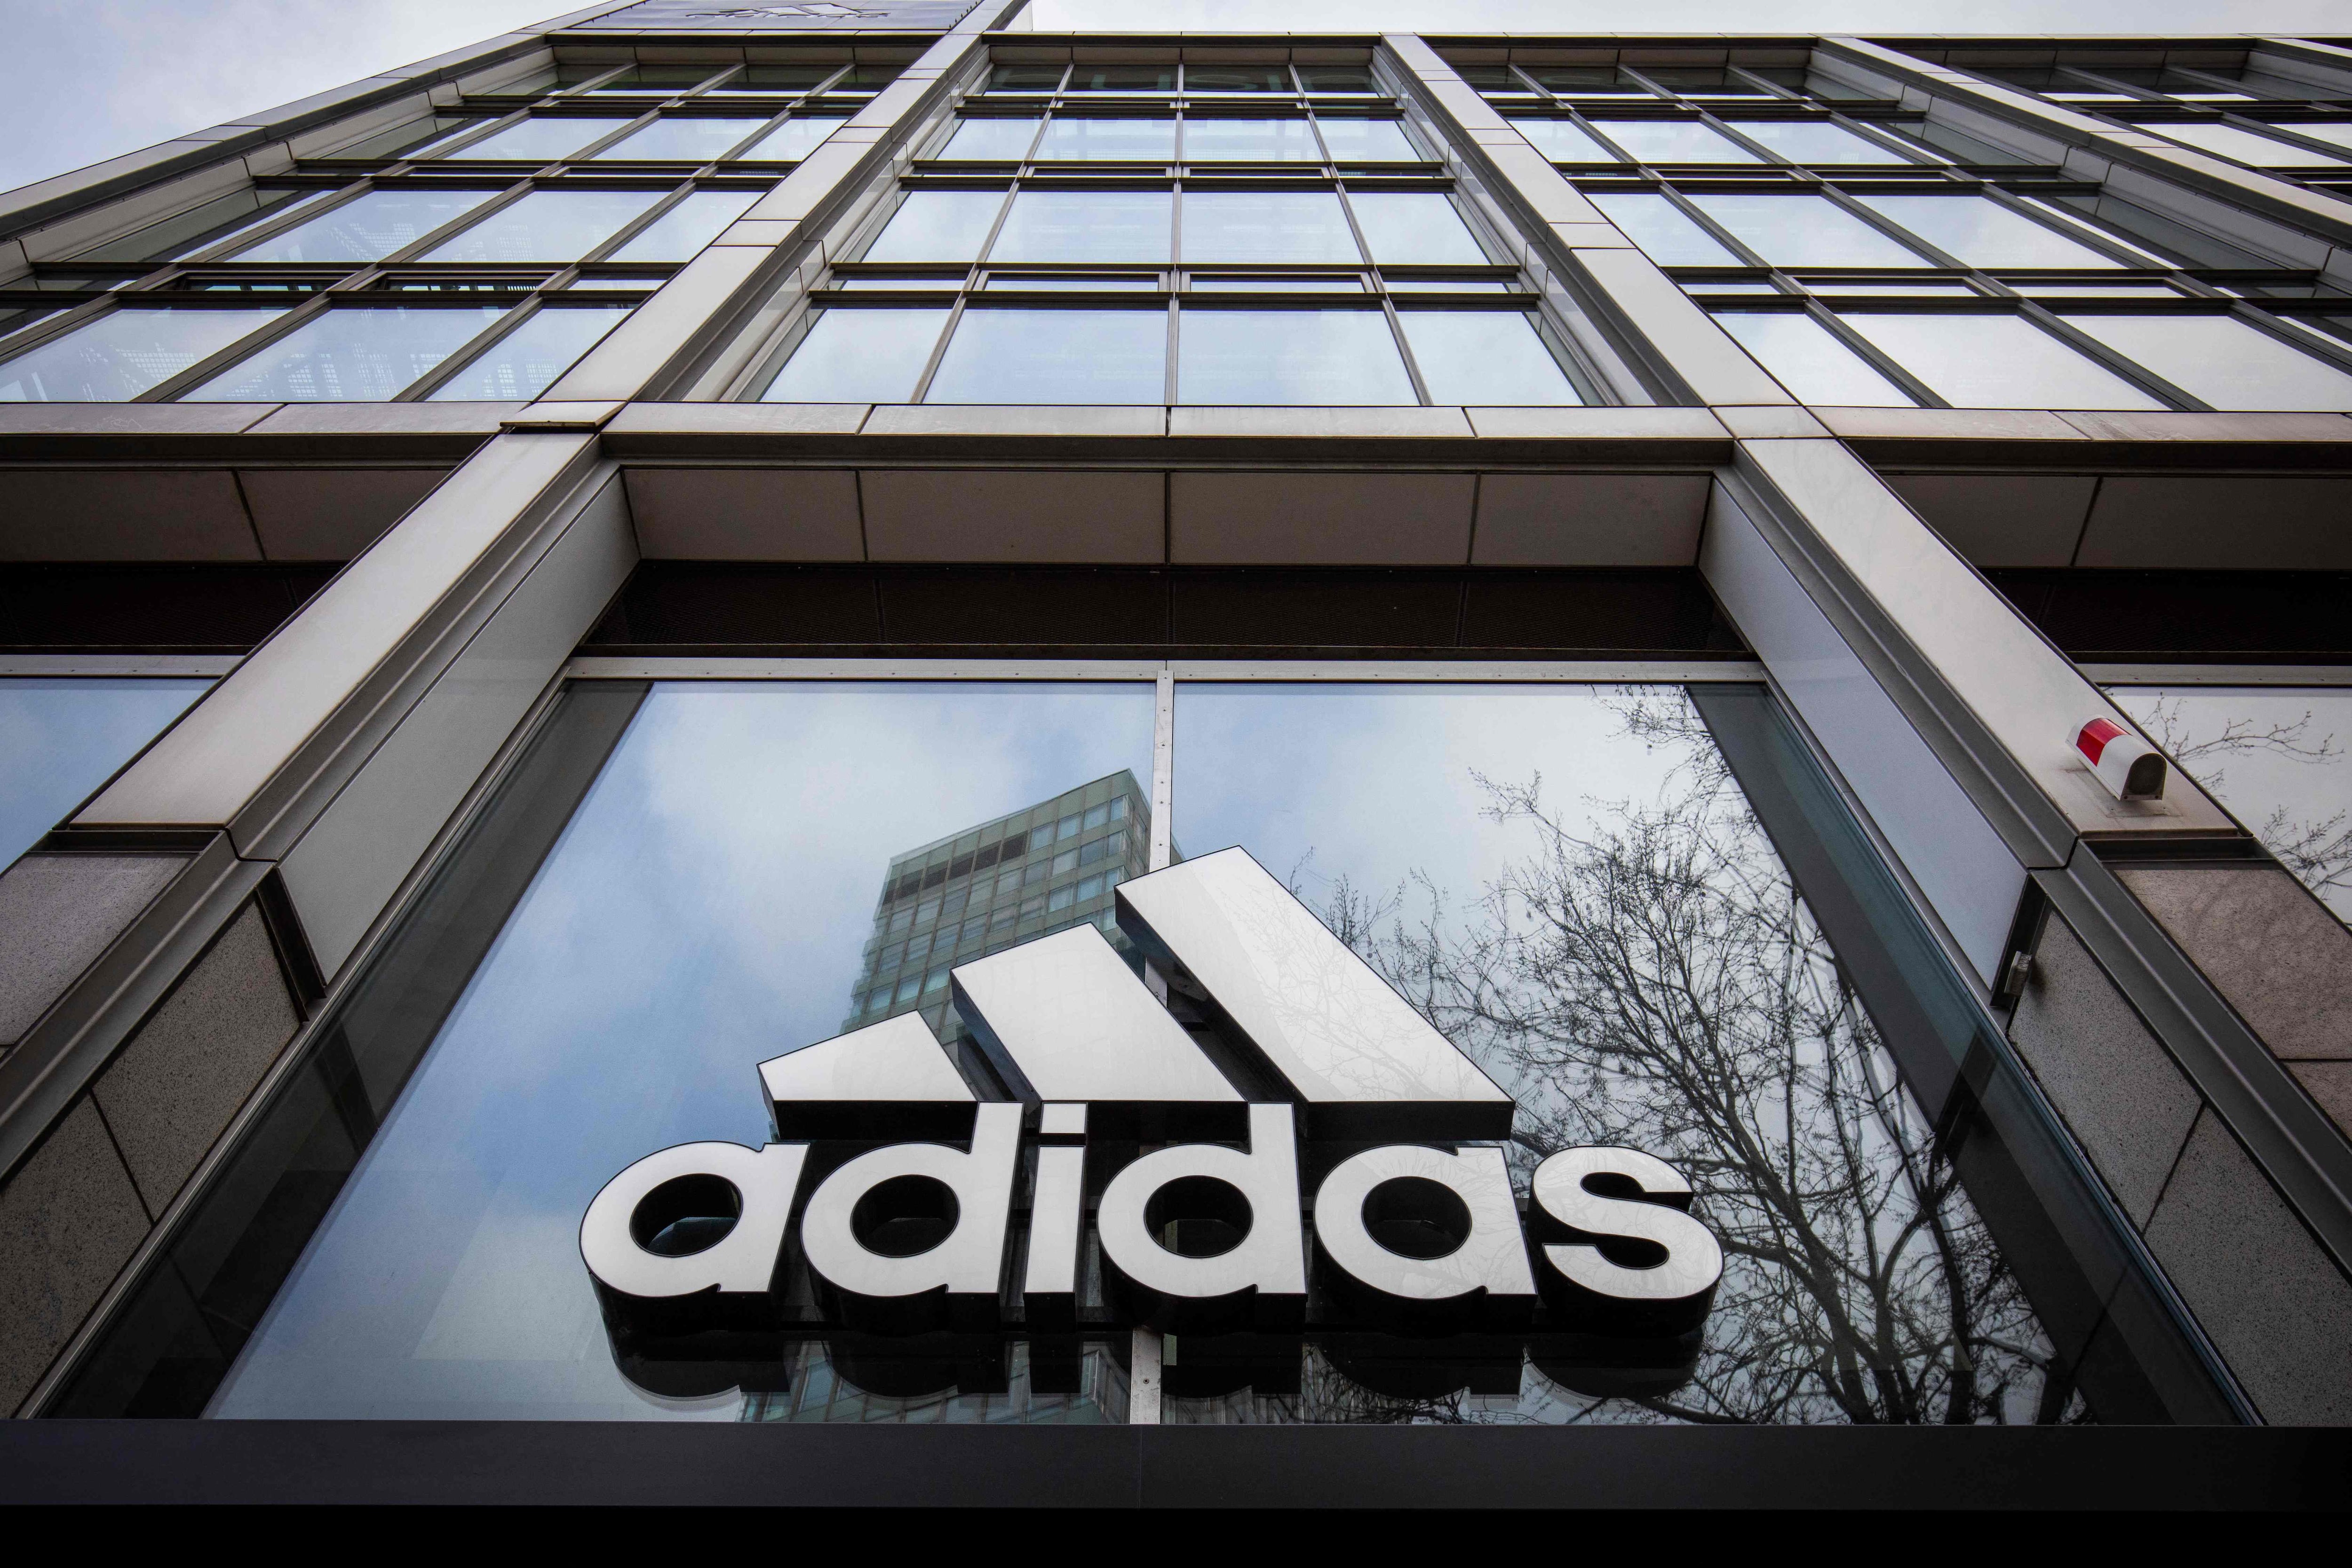 Un directivo de Adidas China está acusado de haber recibido 'millones en efectivo de proveedores, así como propiedades inmobiliarias', informó el Financial Times.